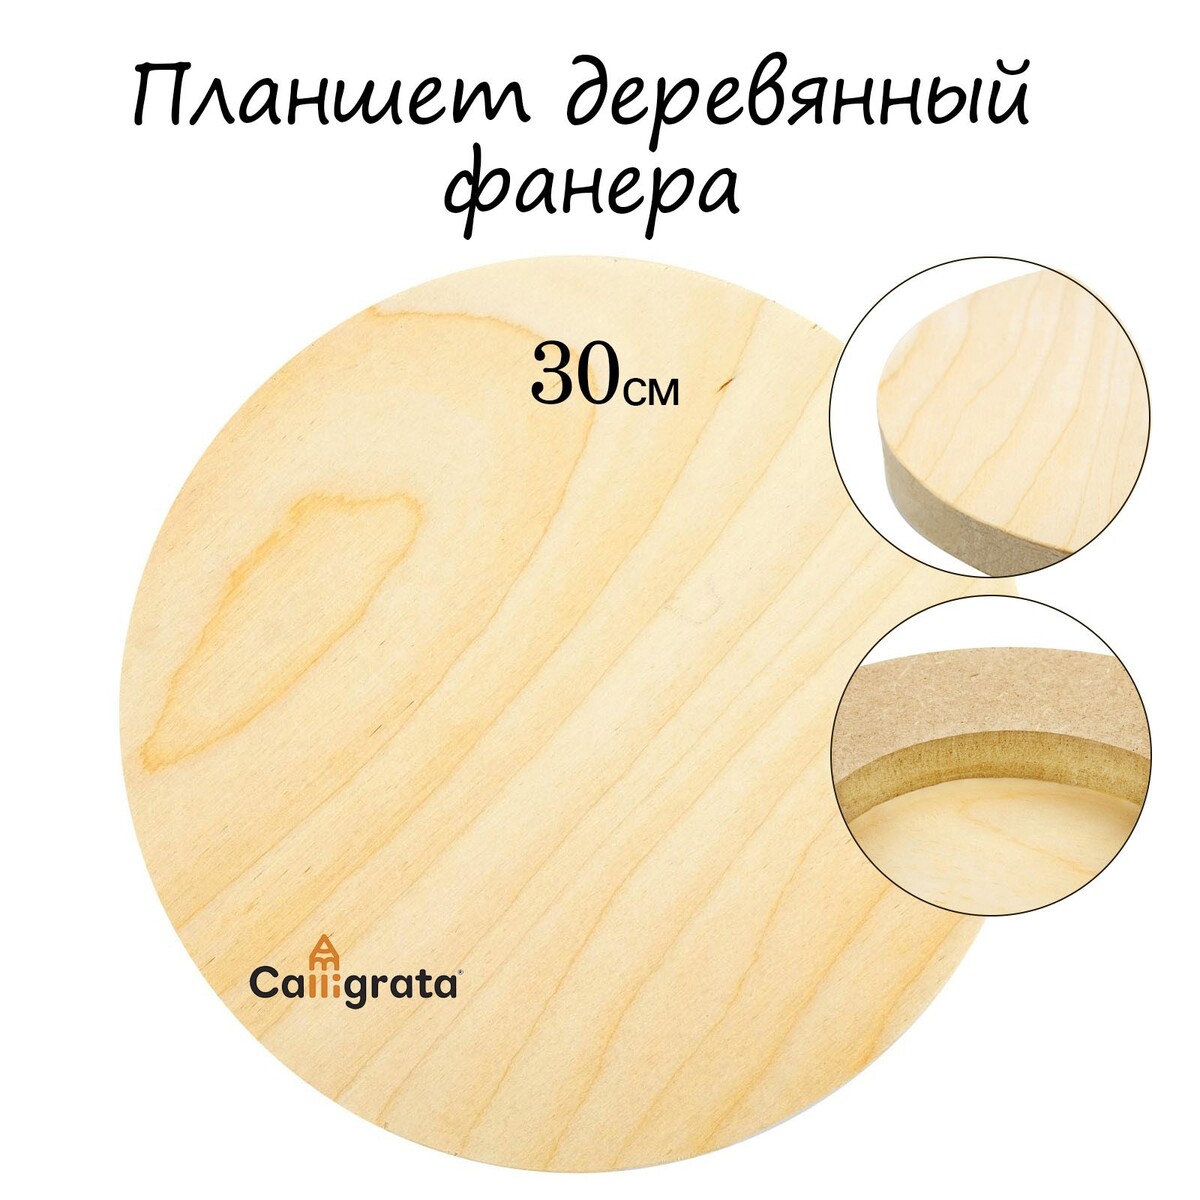 Планшет круглый деревянный фанера d-30 х 2 см, сосна, calligrata планшет деревянный 30 х 40 х 2 см фанера